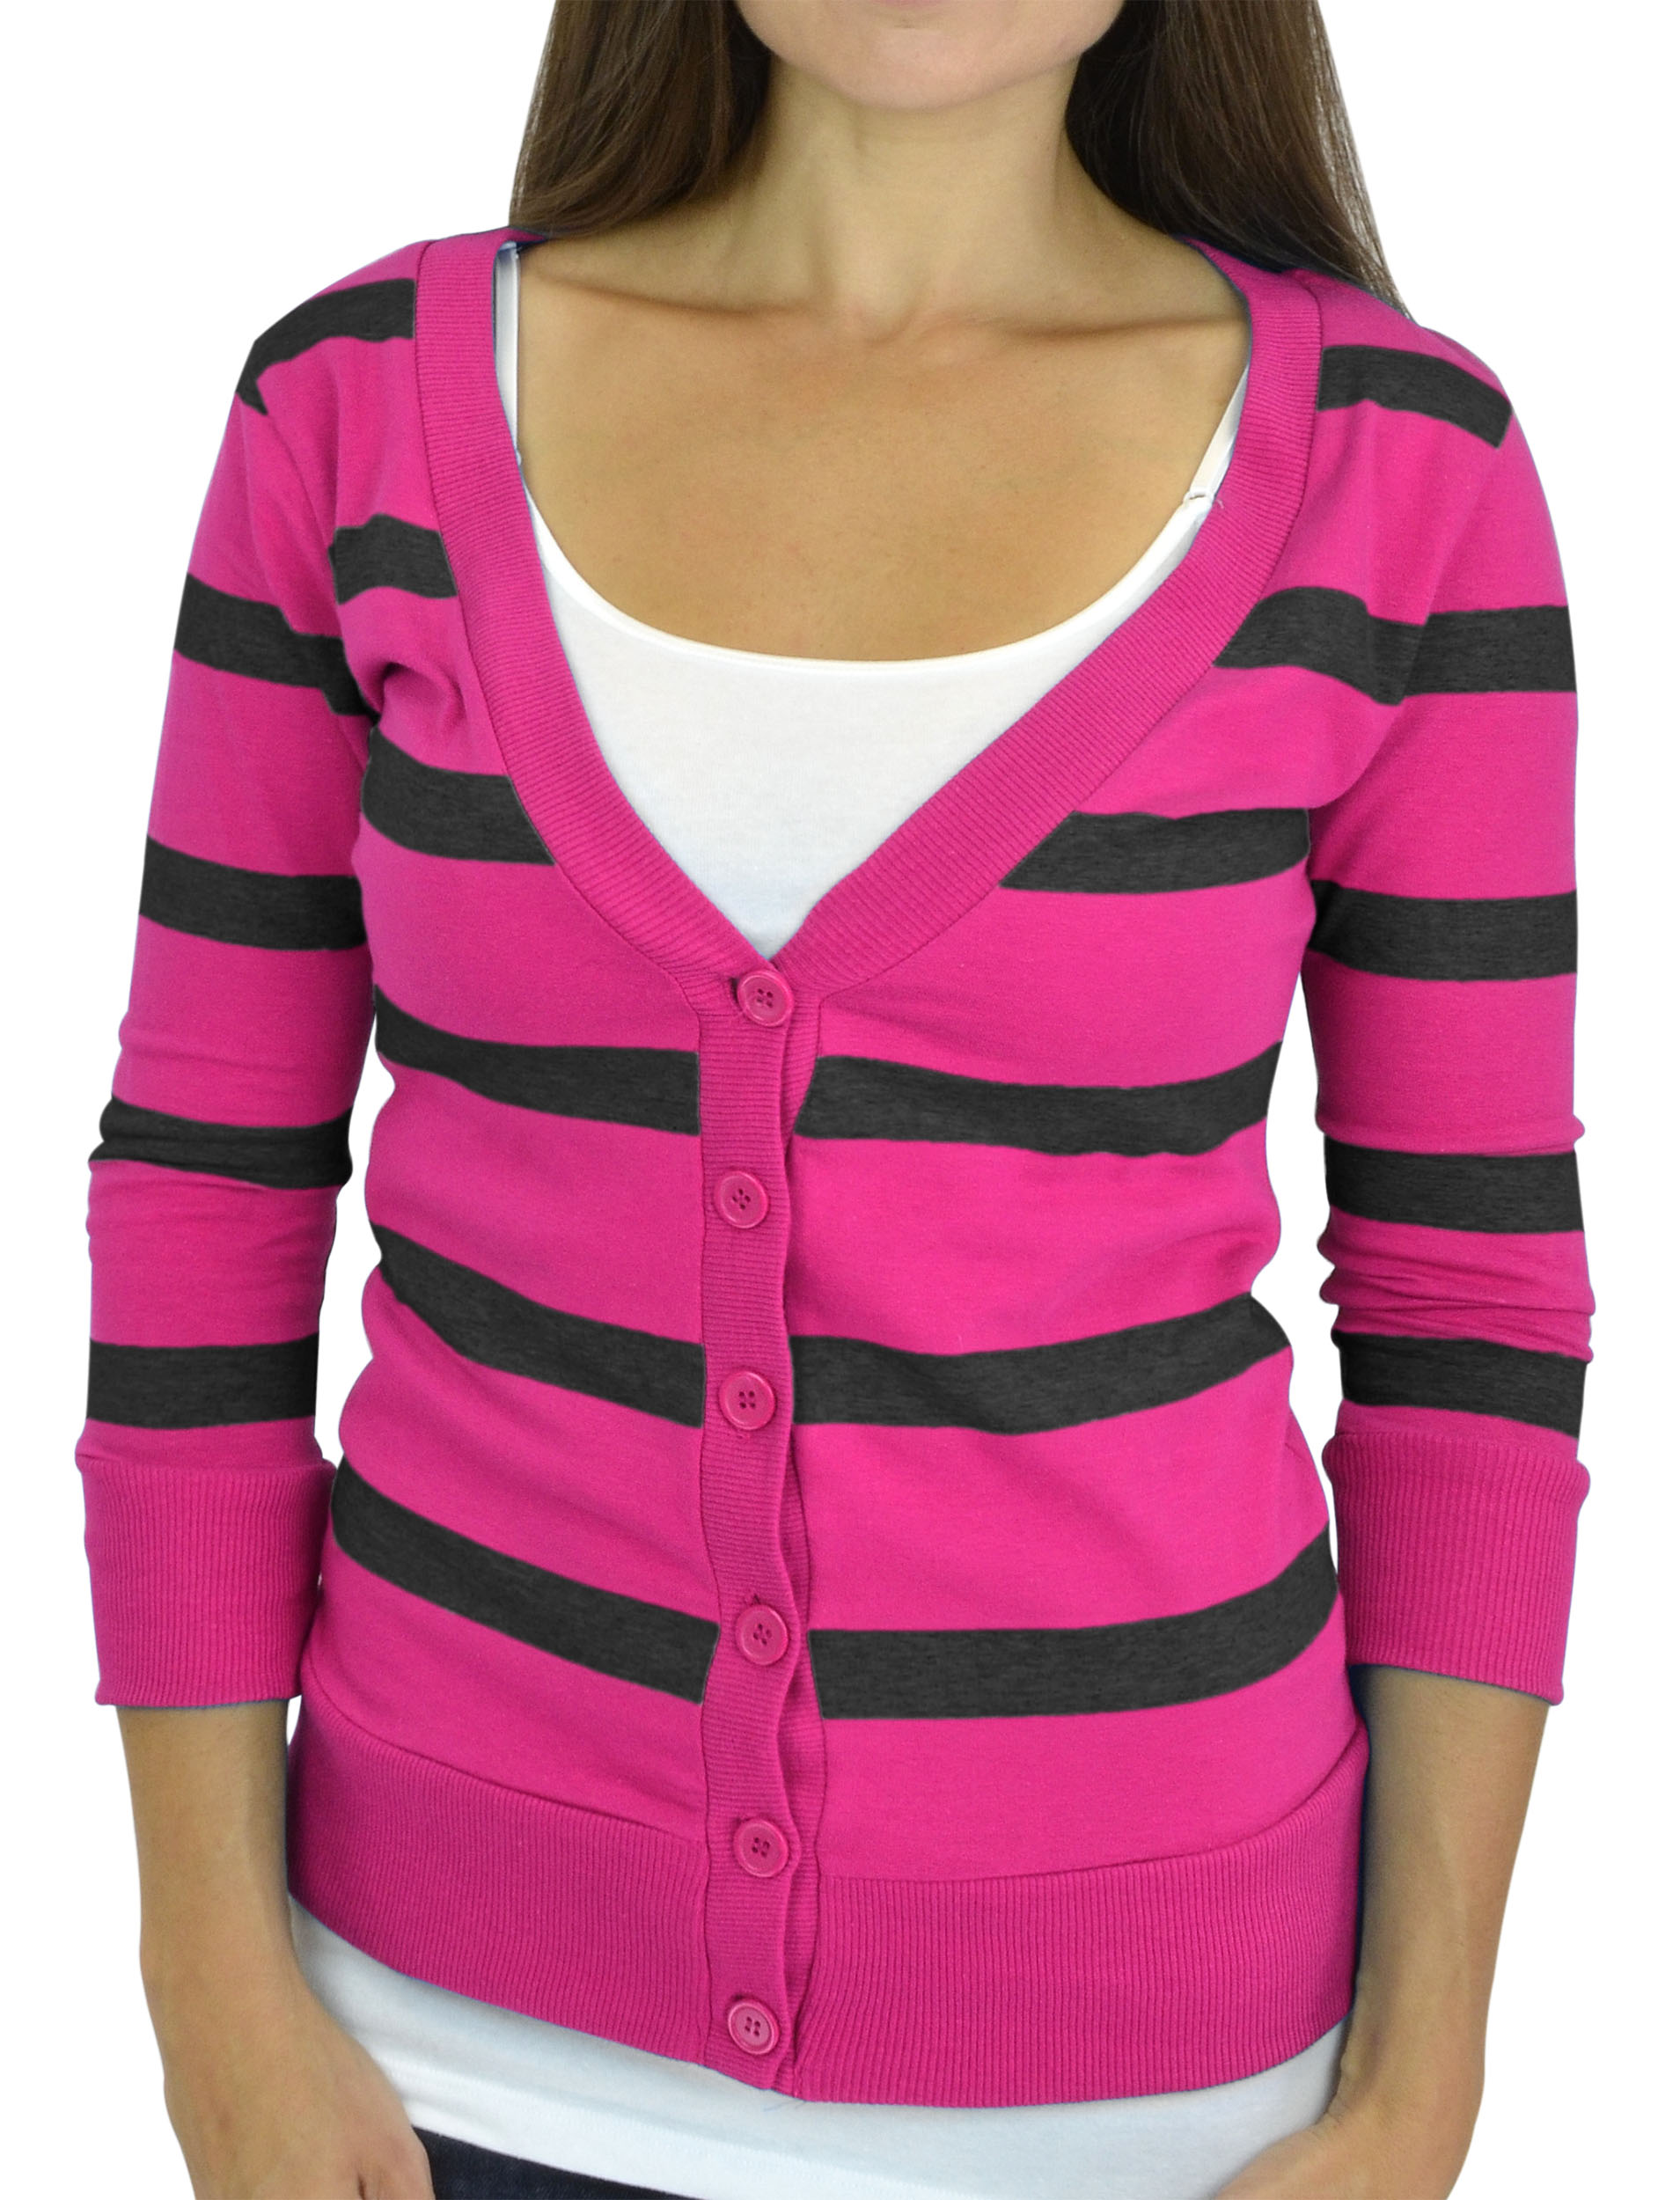 Belle Donne - Women / Girl Junior Size Soft 3/4 Sleeve V-Neck Sweater Cardigans - Black/Small